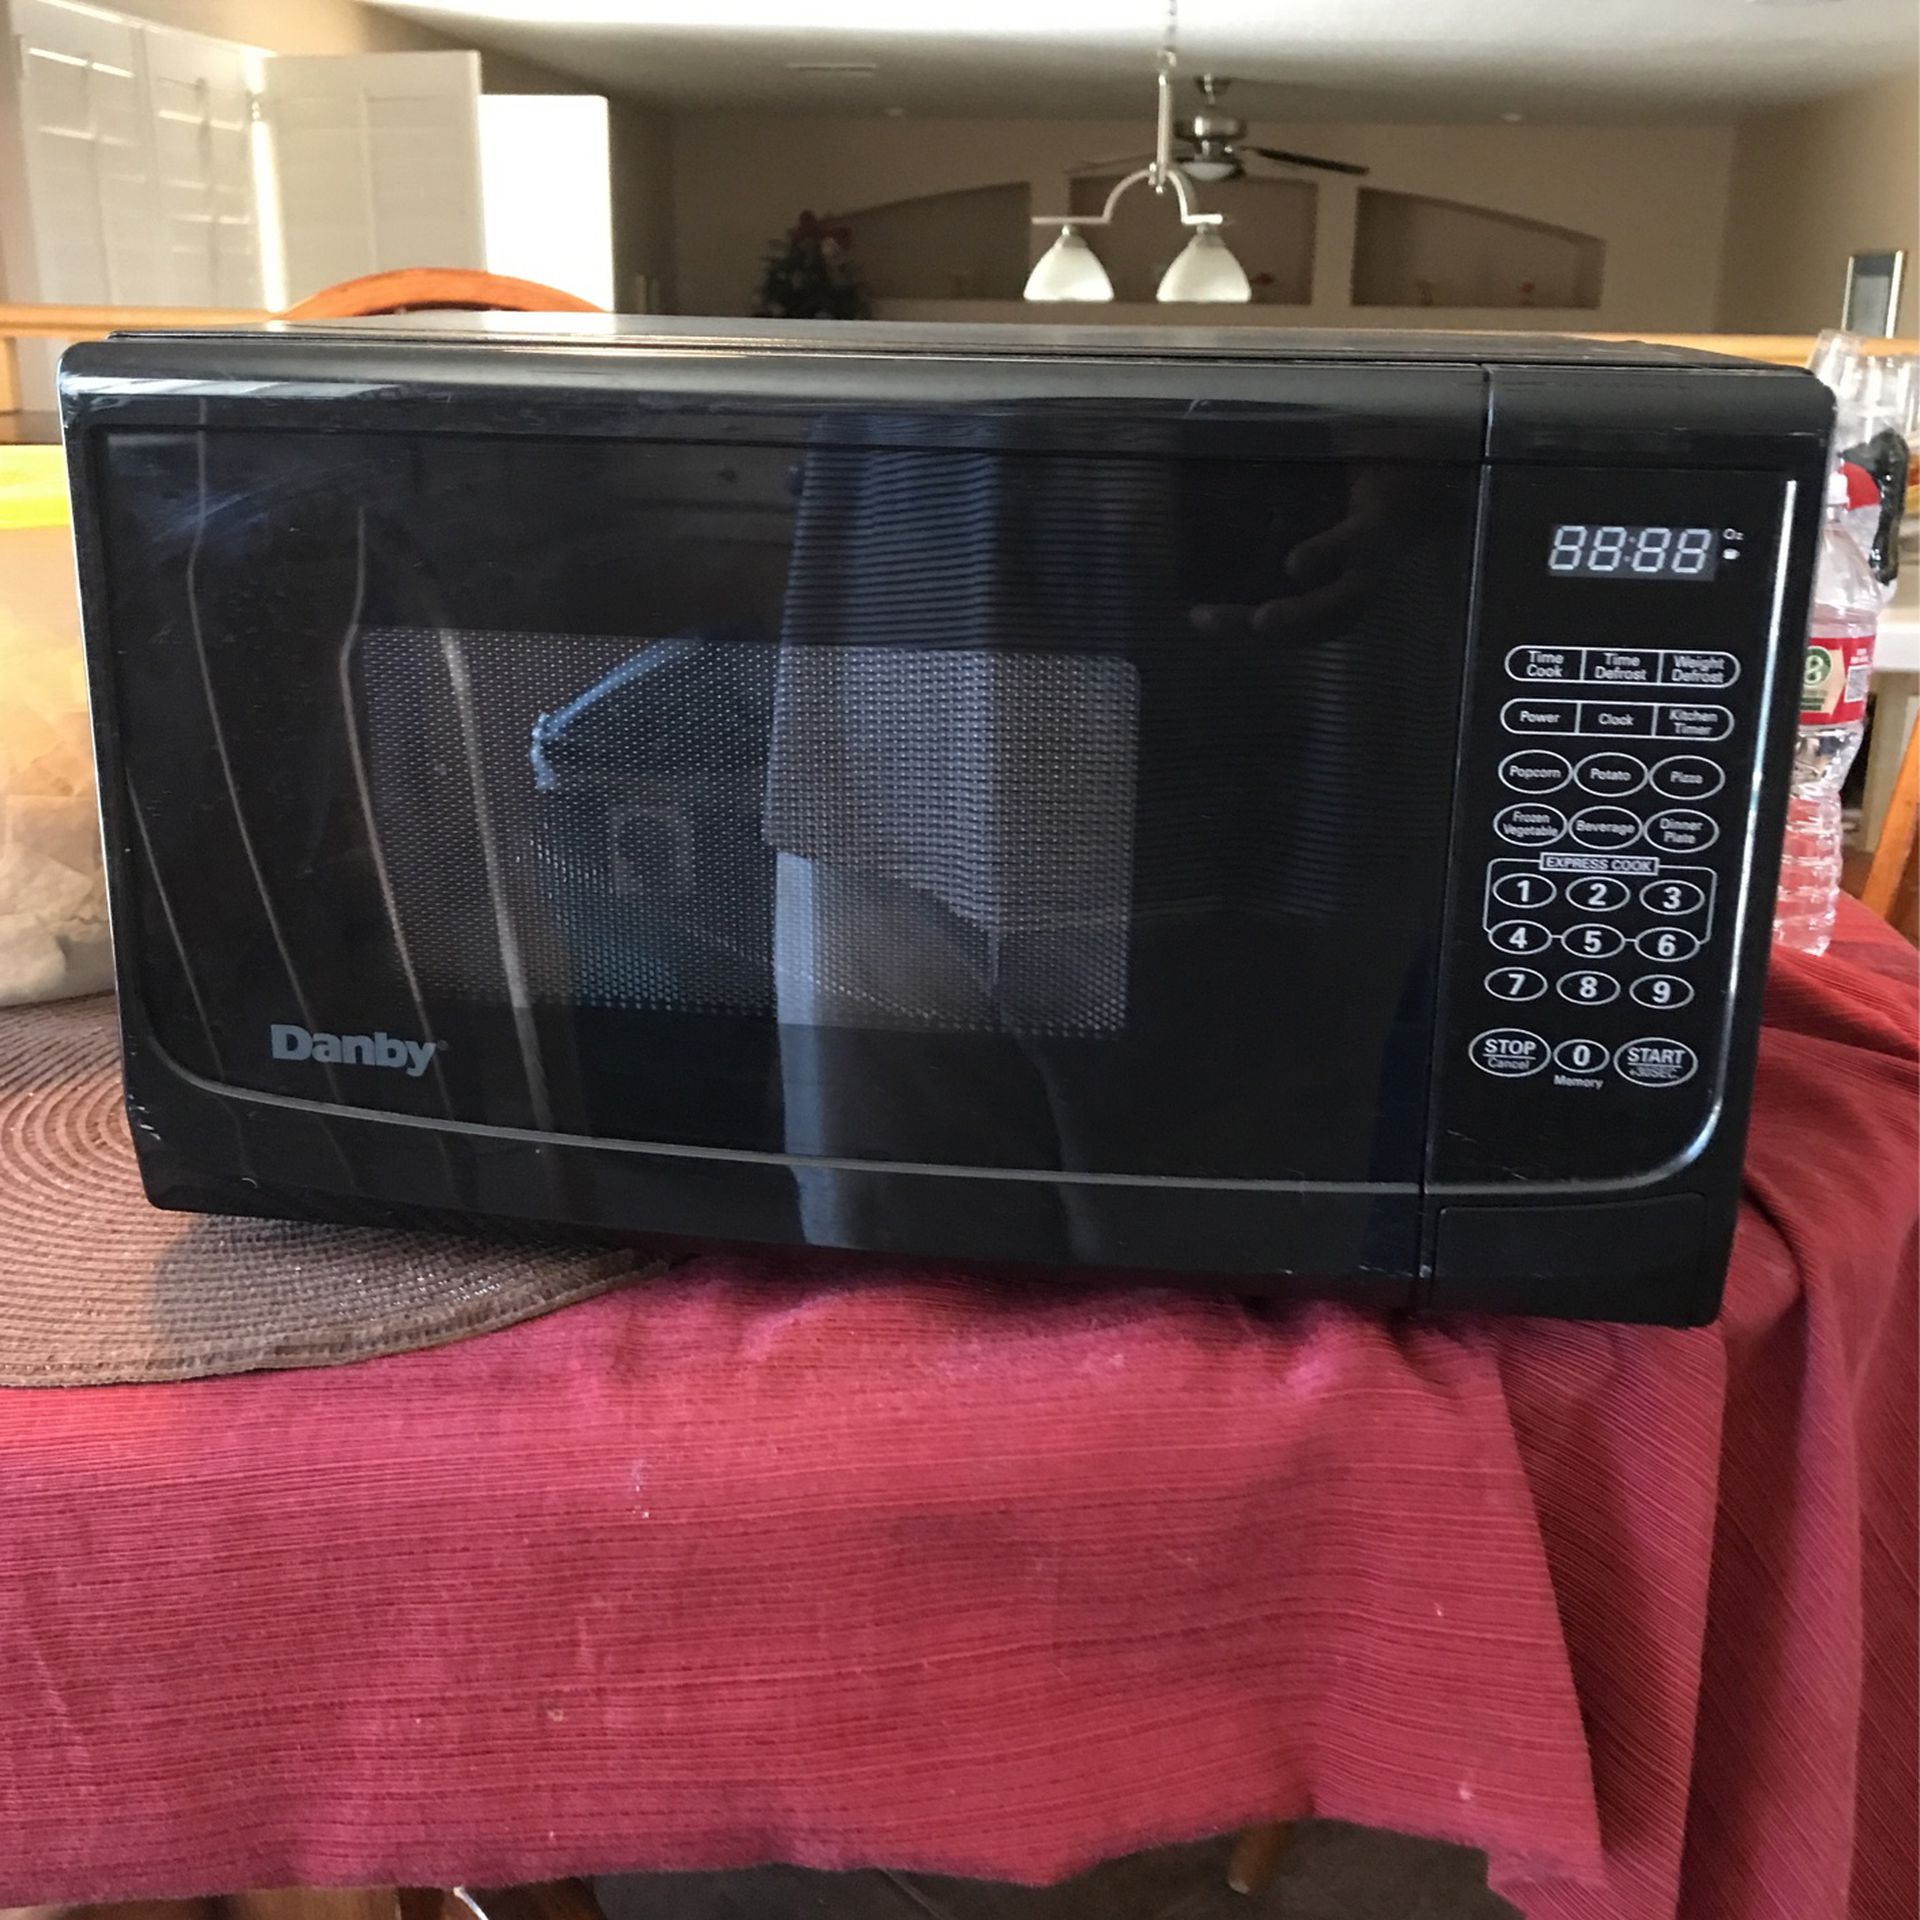 Brand New Darby Brand Microwave 